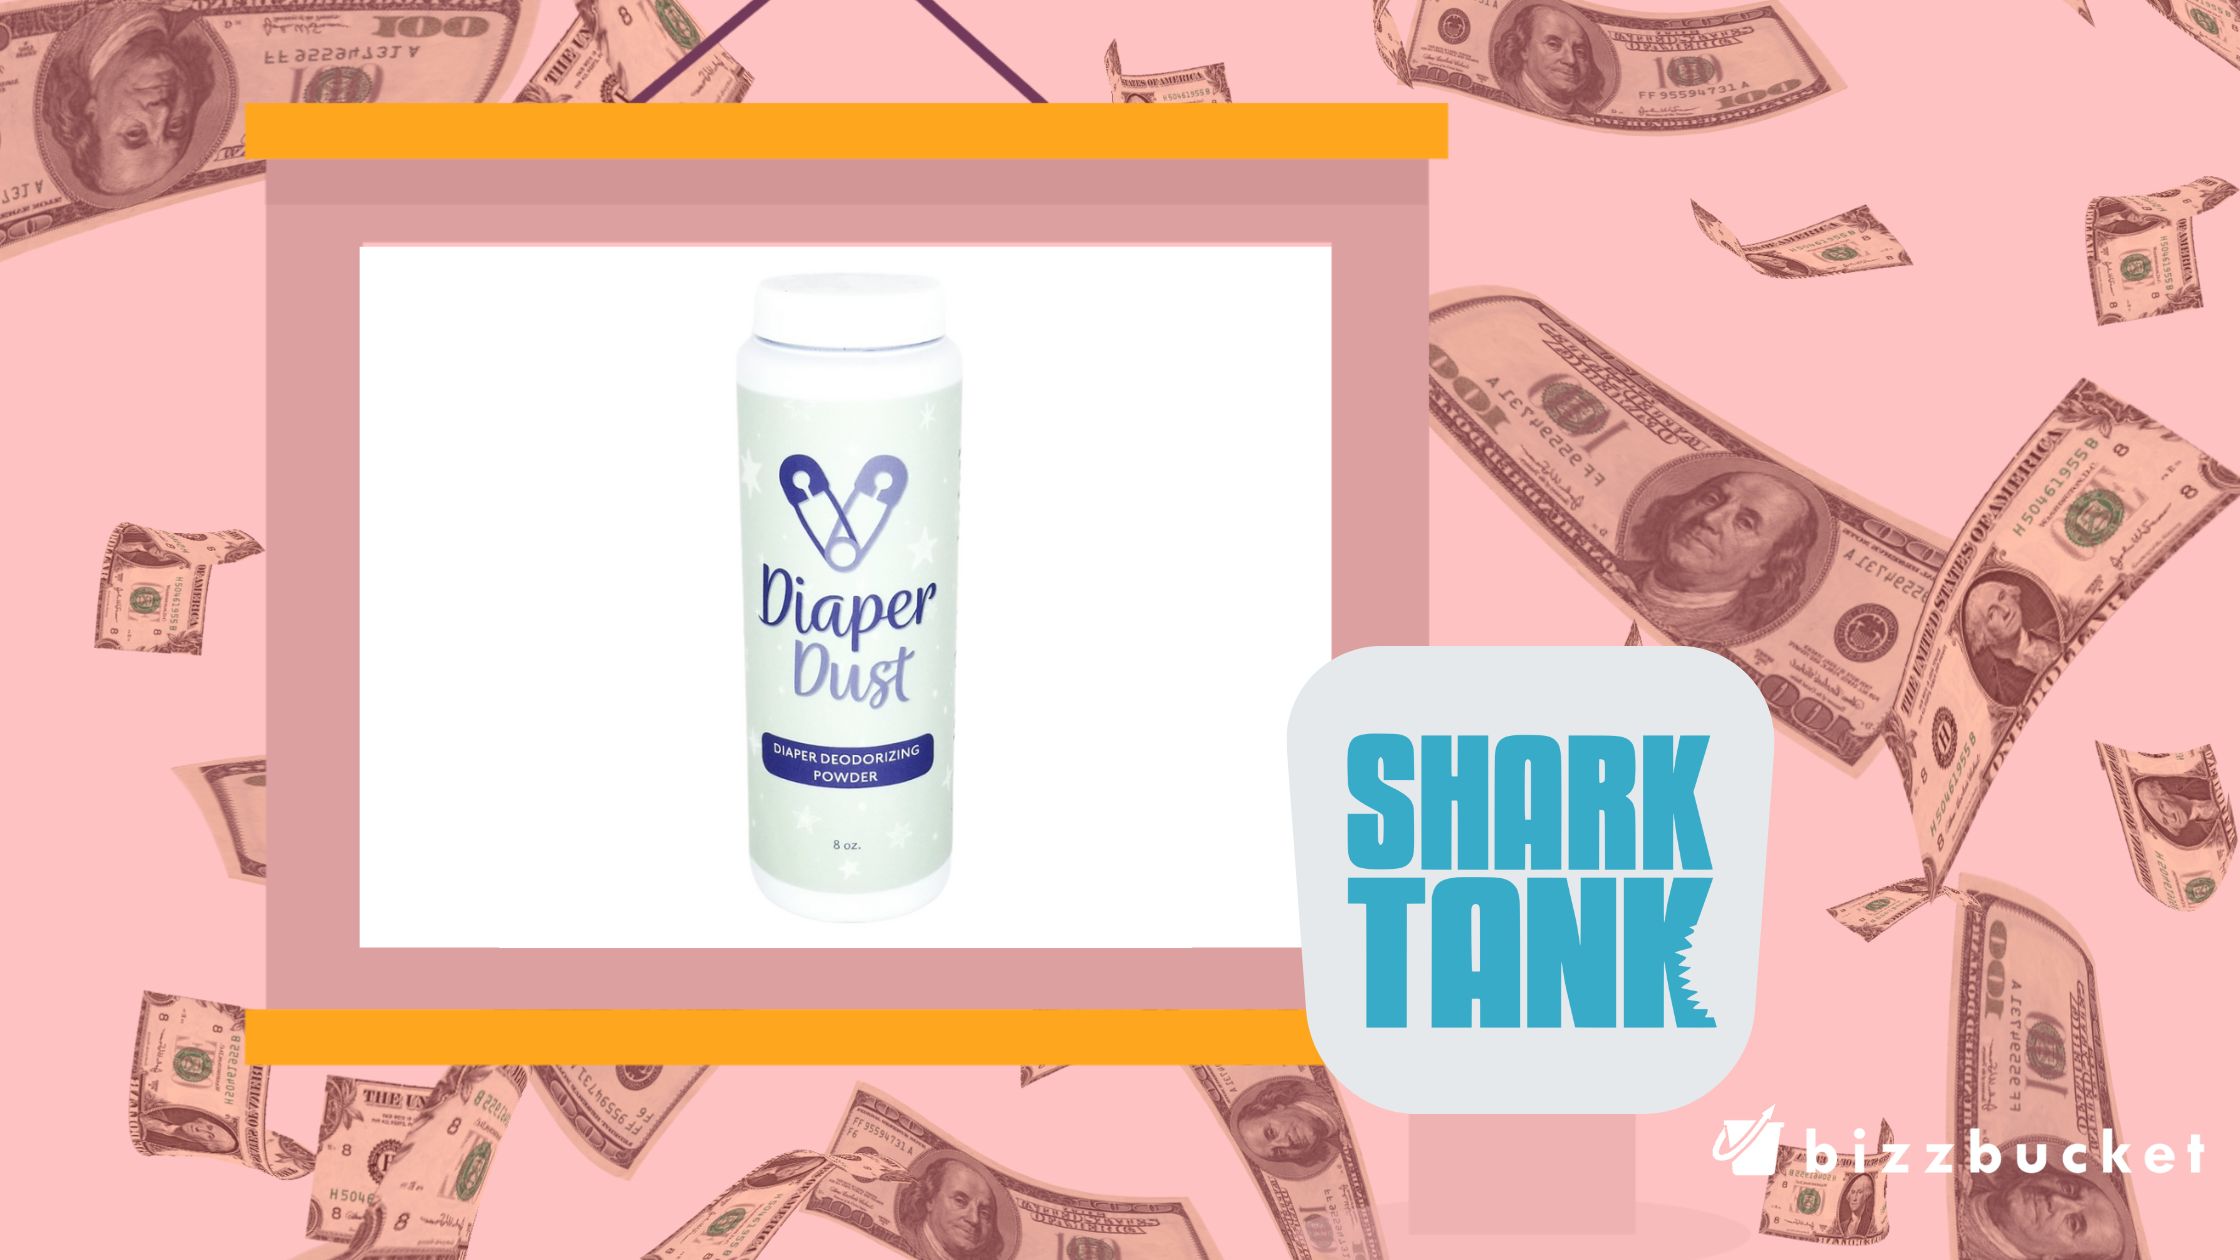 Diaper Dust shark tank update